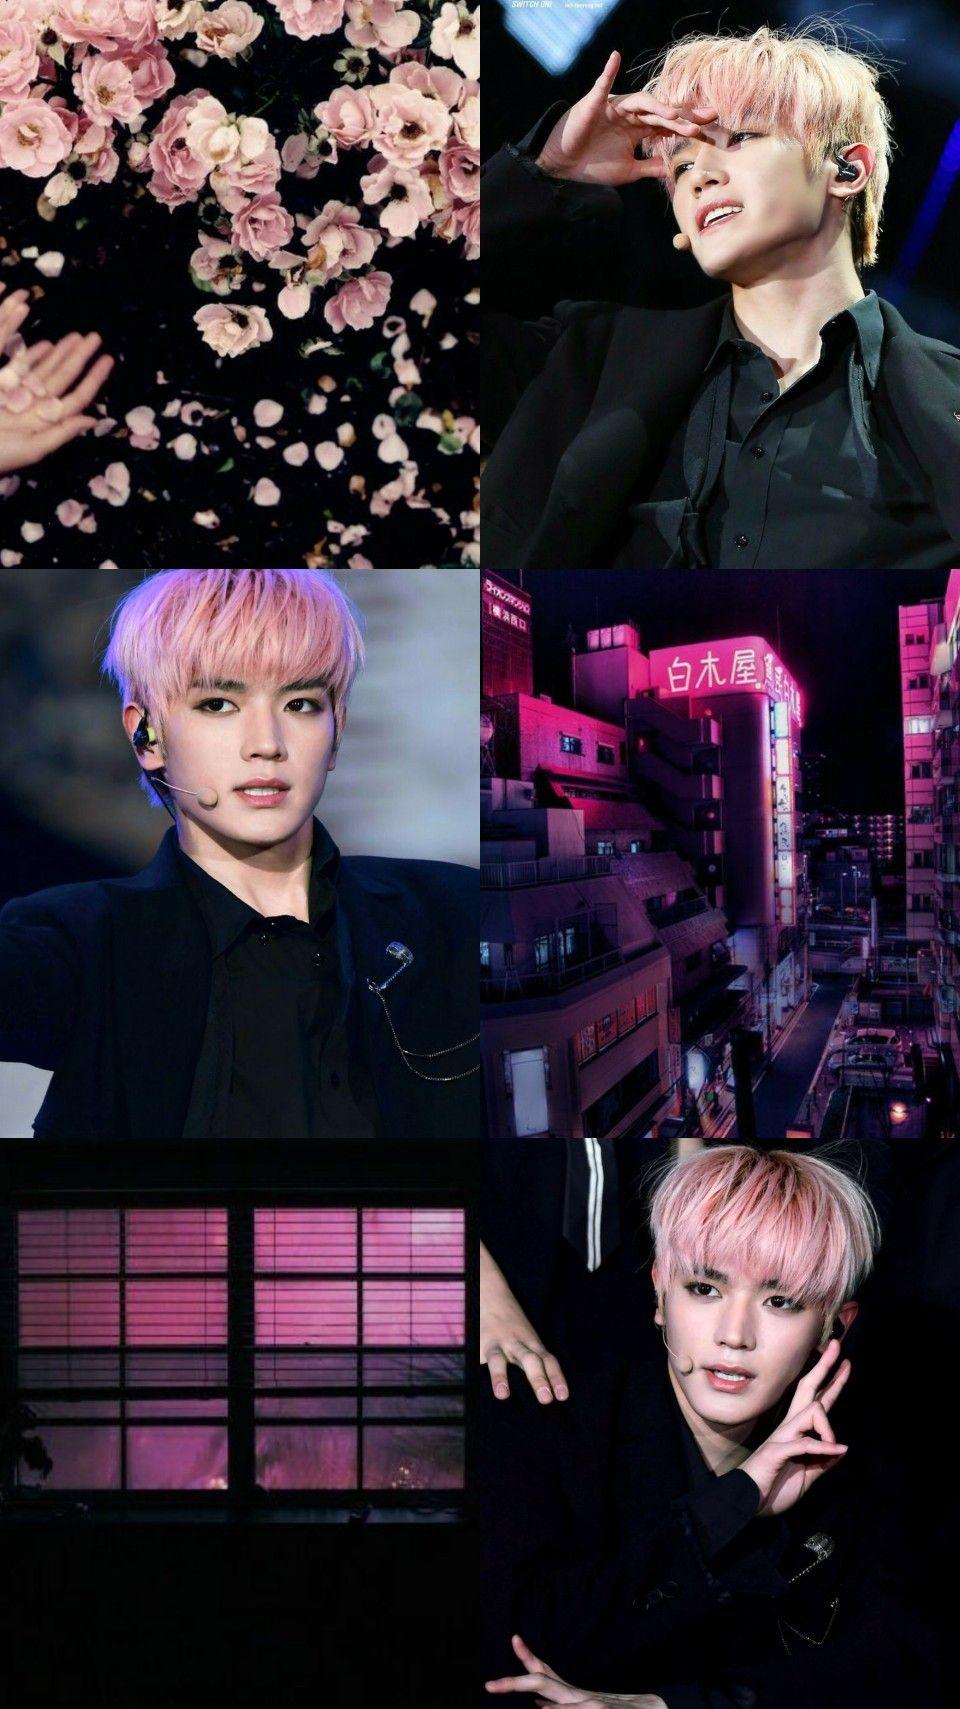 Pink & black aesthetic #TAEYONG #NCT #AESTHETIC di 2019